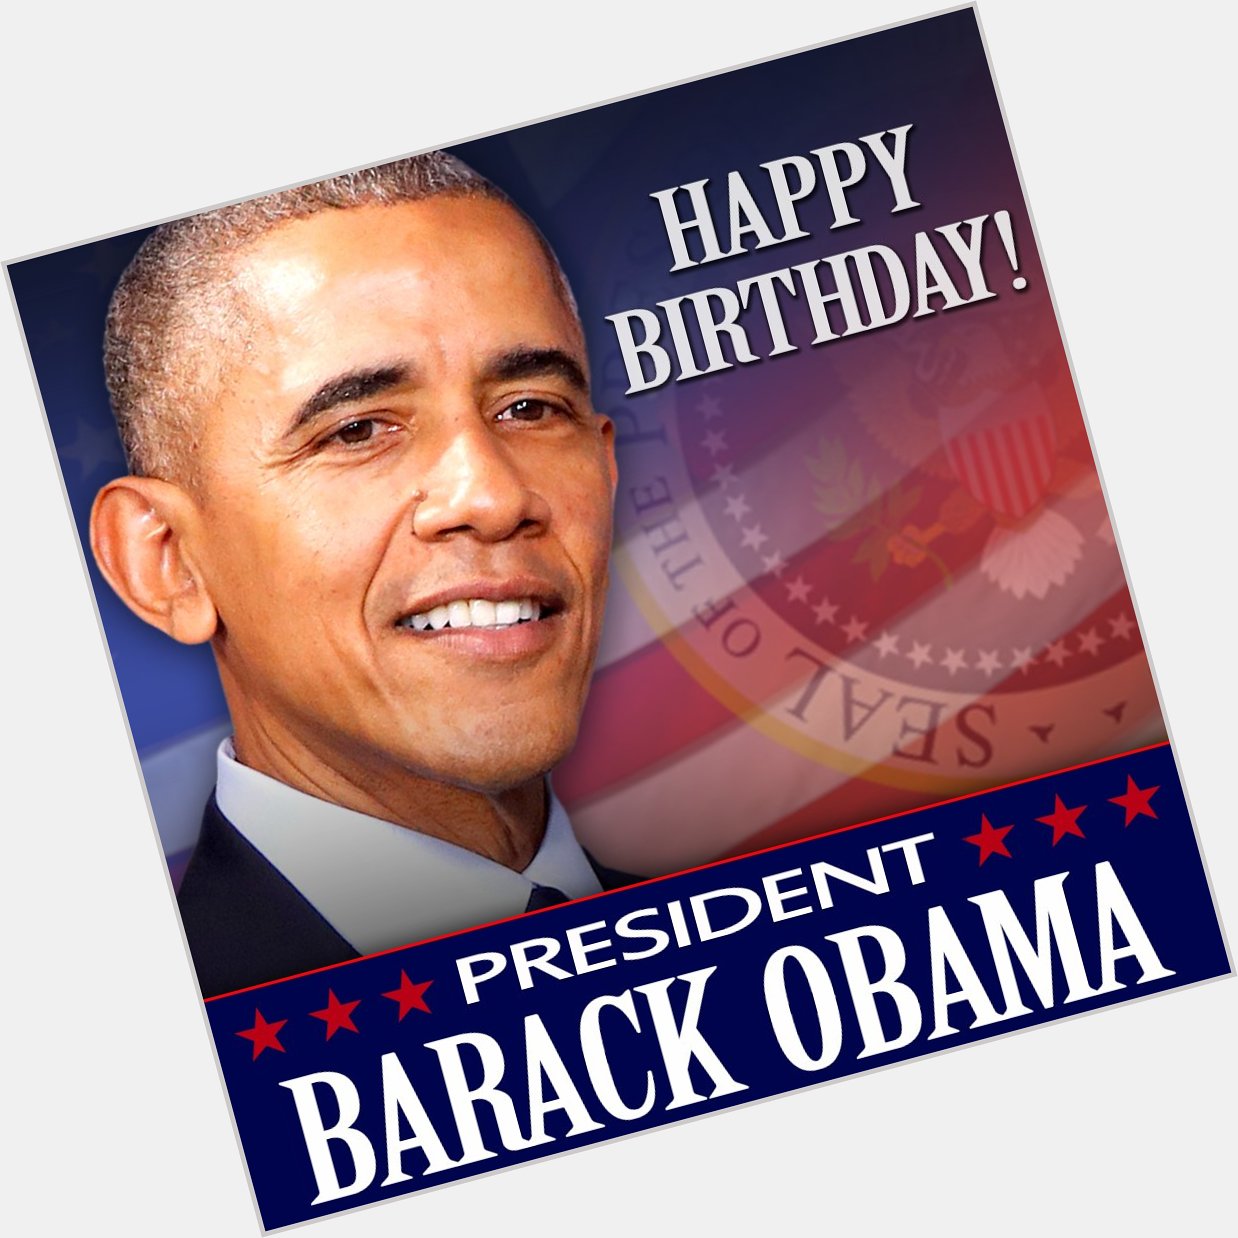 Happy Birthday to former President Barack Obama who turns 57 today! 